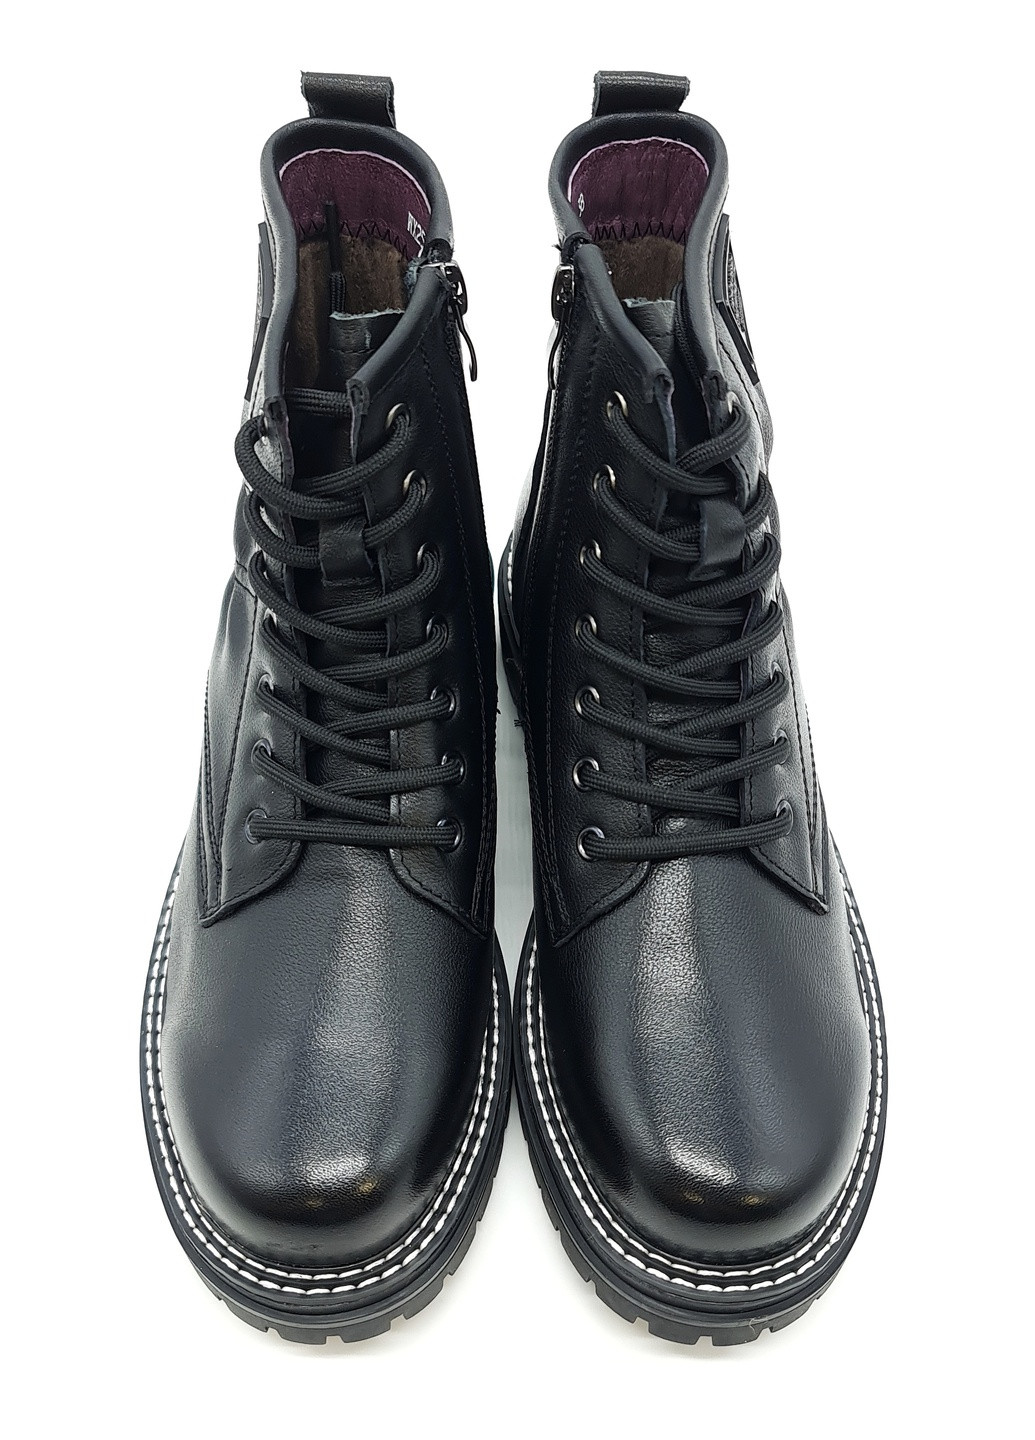 Осенние женские ботинки черные кожаные eg-19-2 24 см (р) Egga